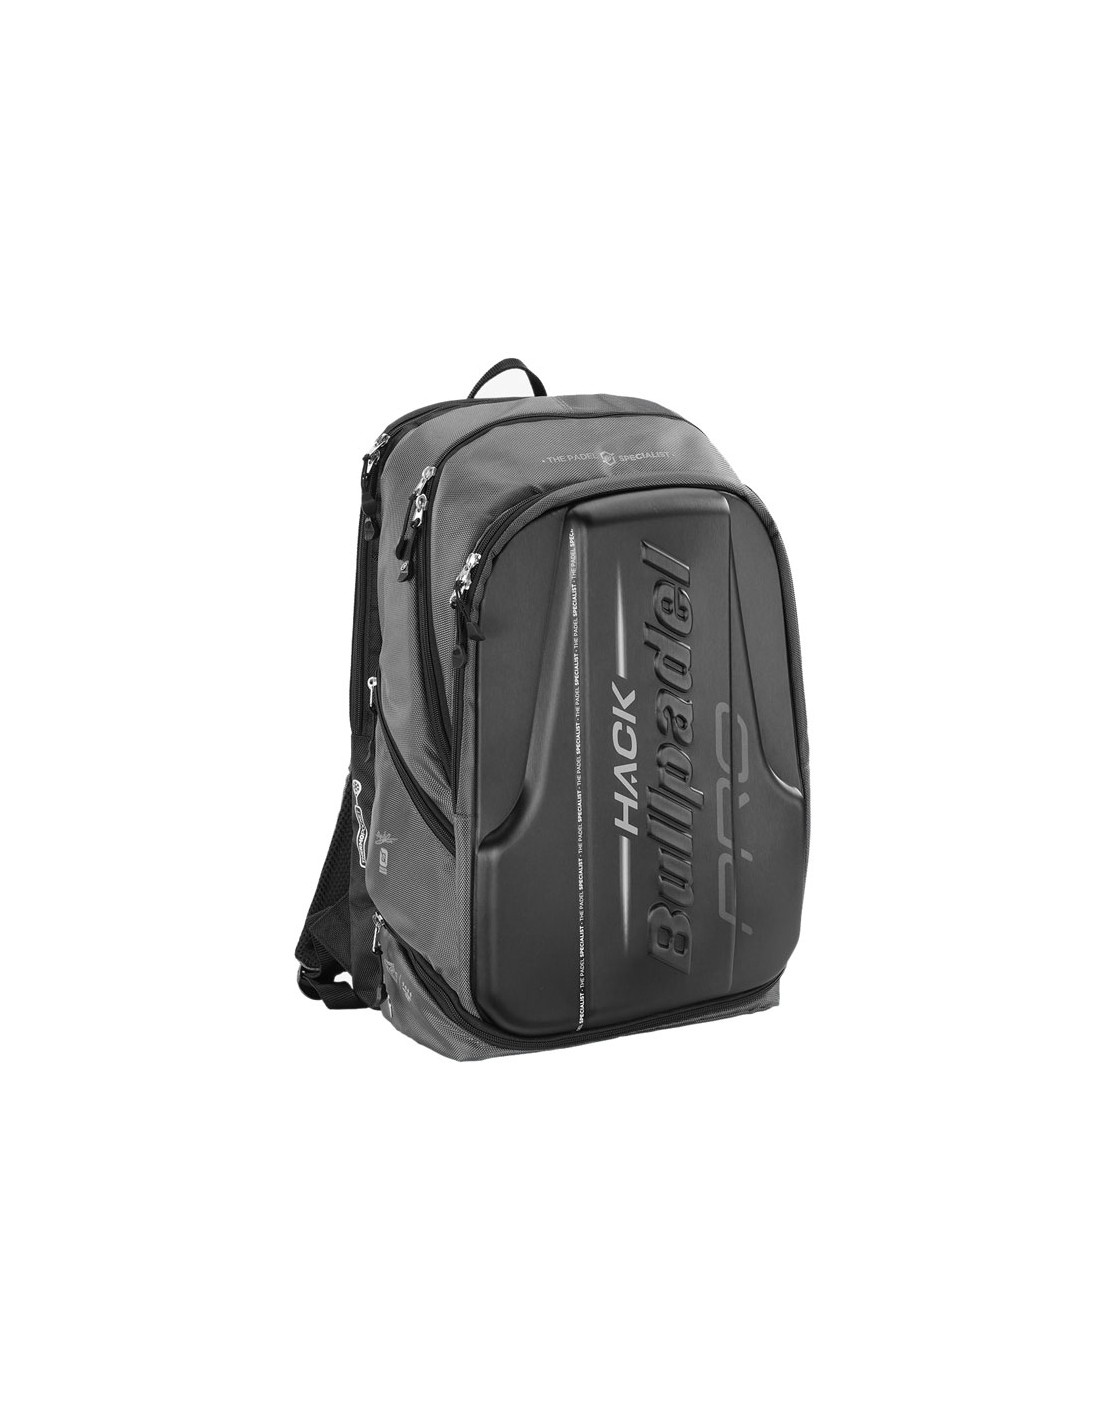 bullpadel backpack black on offer